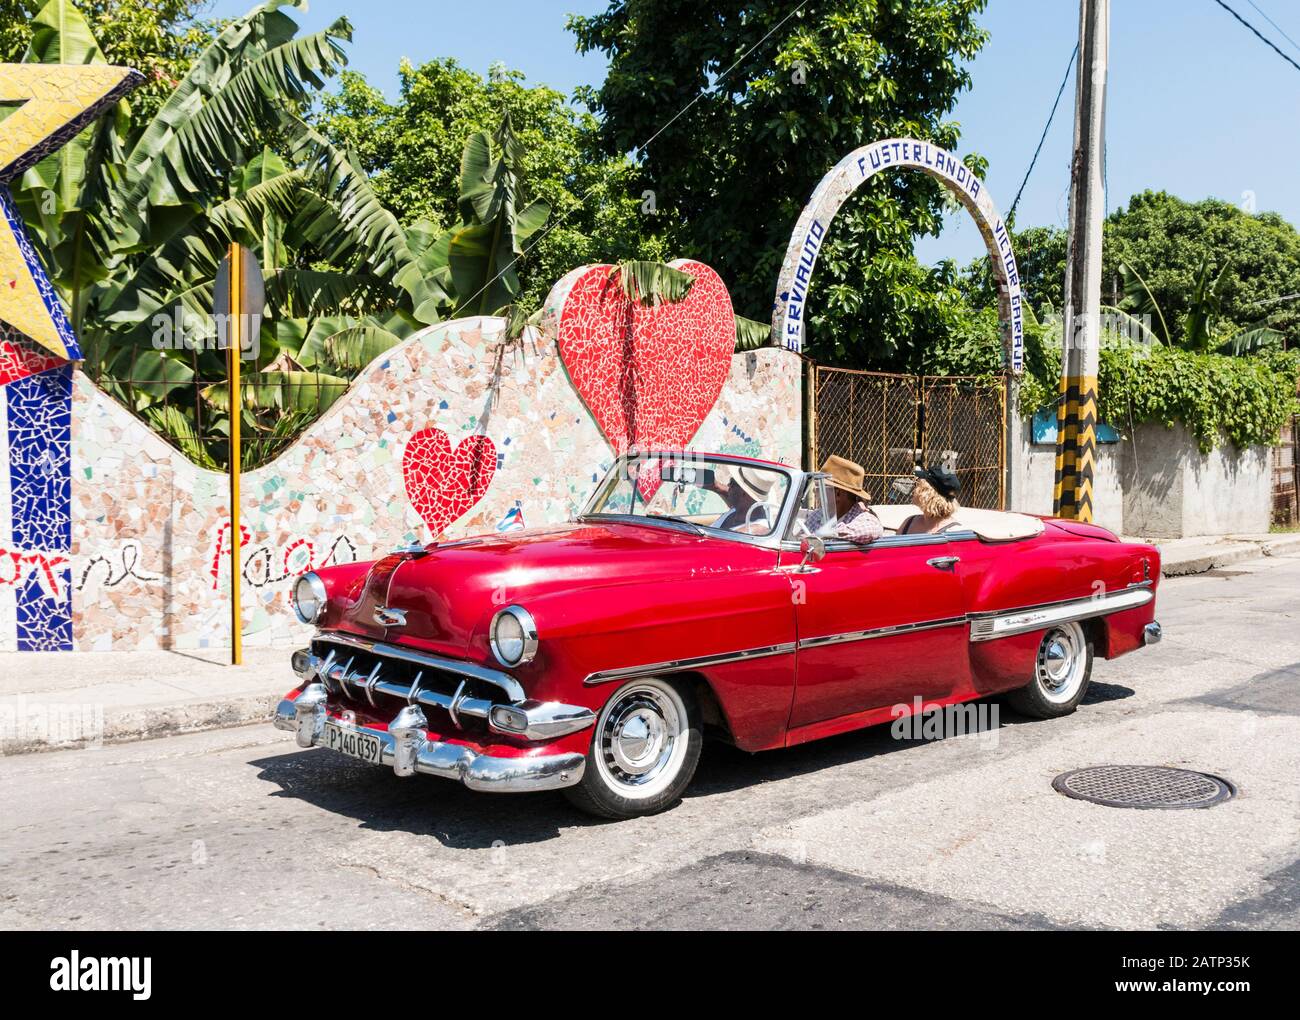 Jaimanitas, Kuba - 25. Juli 2018: Das konvertible Taxi der roten 1950er Jahre, das Touristen in die Kunststadt Fusterlandia vor Havanna Kuba fährt. Stockfoto